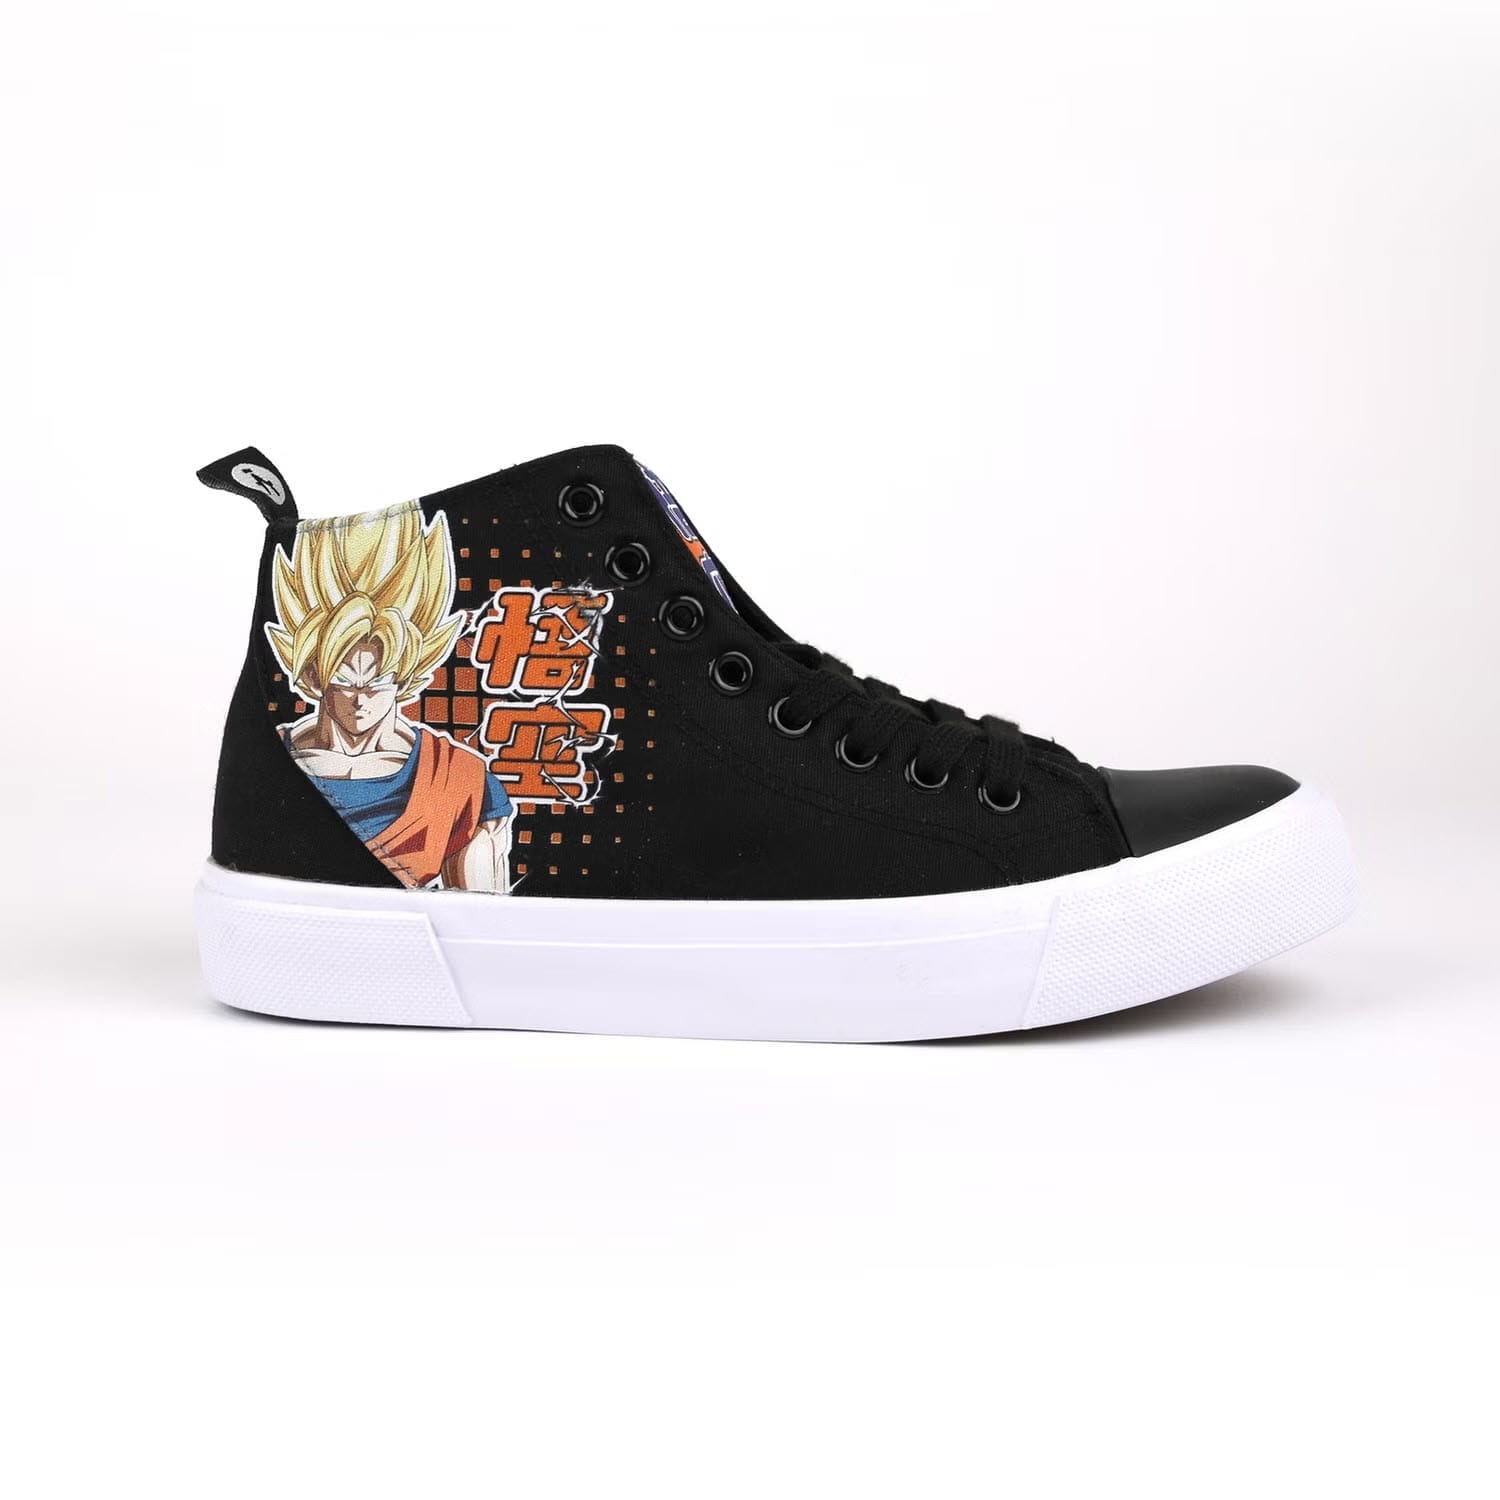 Goku shoe